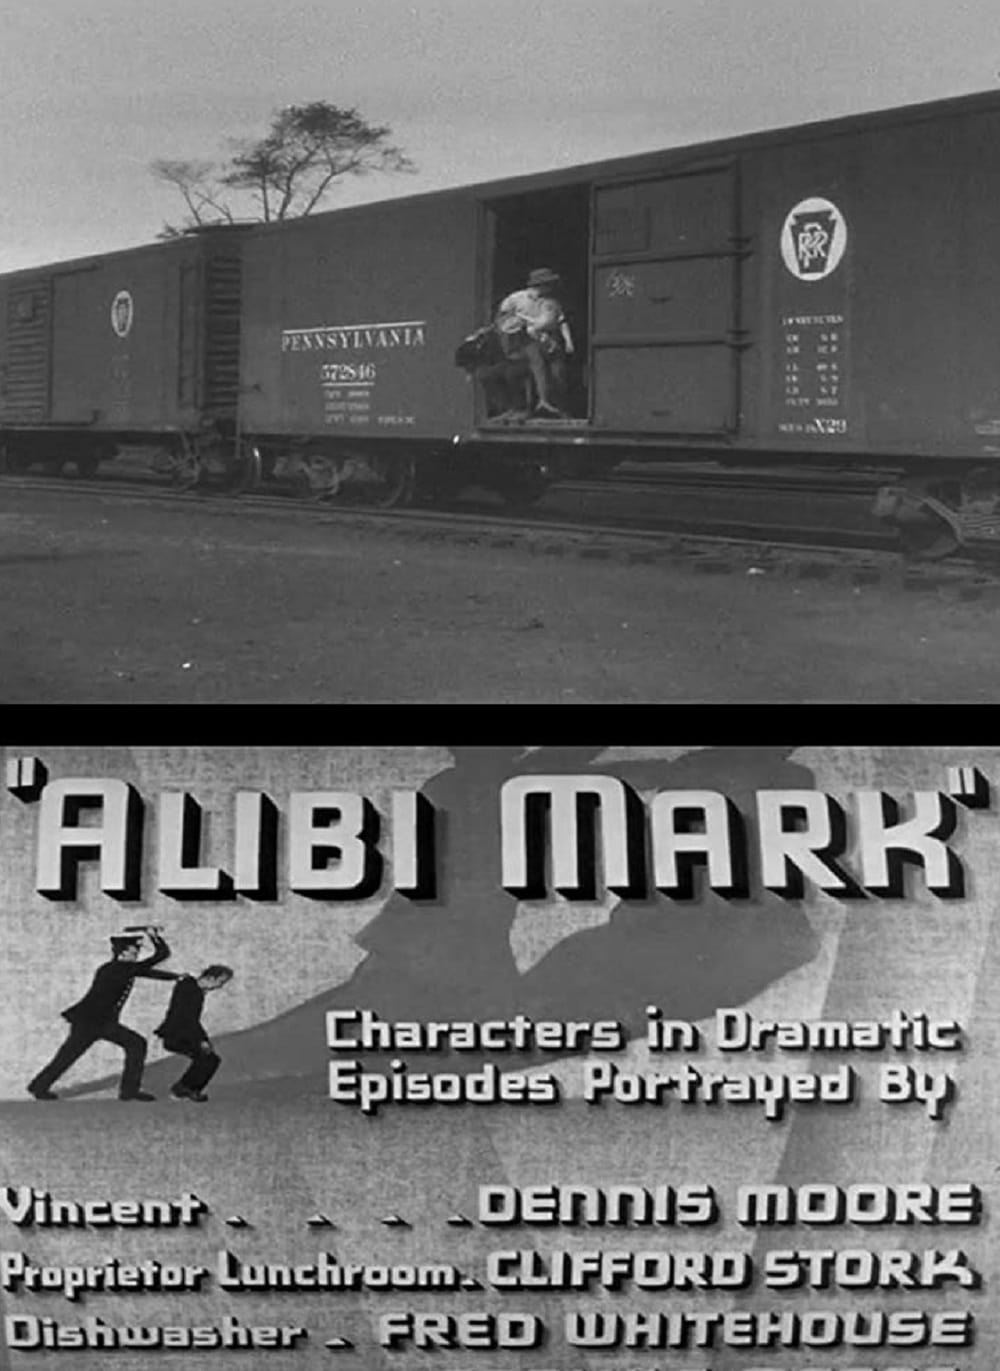 Alibi Mark (1937)